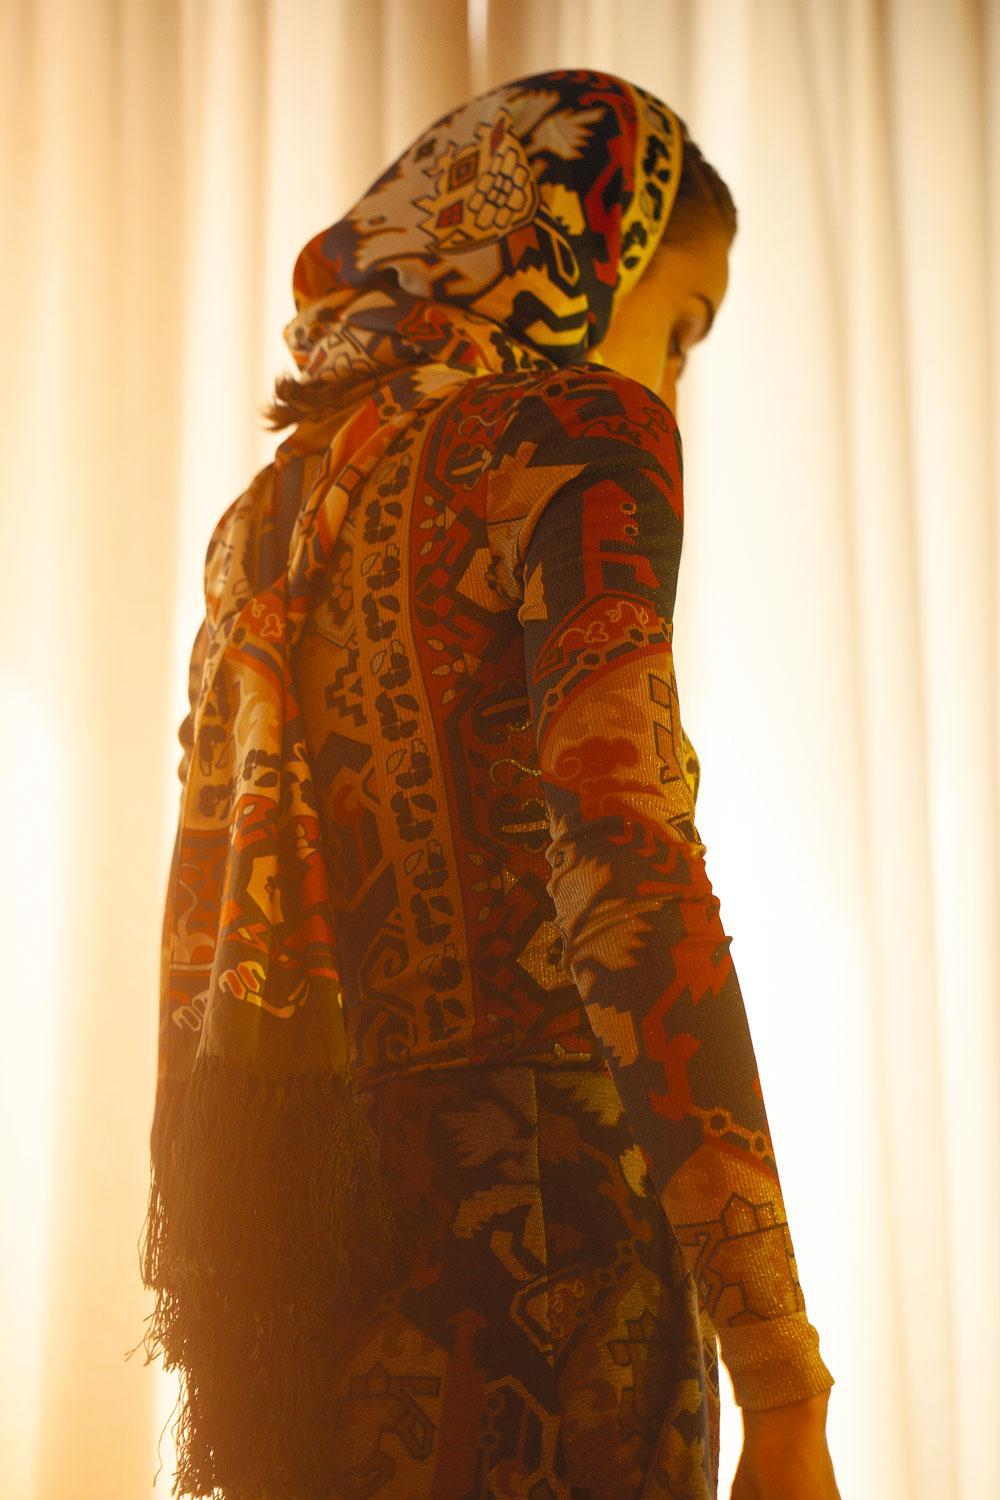 Rolkraagtrui in bedrukte zijdejersey, wollen rok met print  en zijden sjaal, Acne Studios.